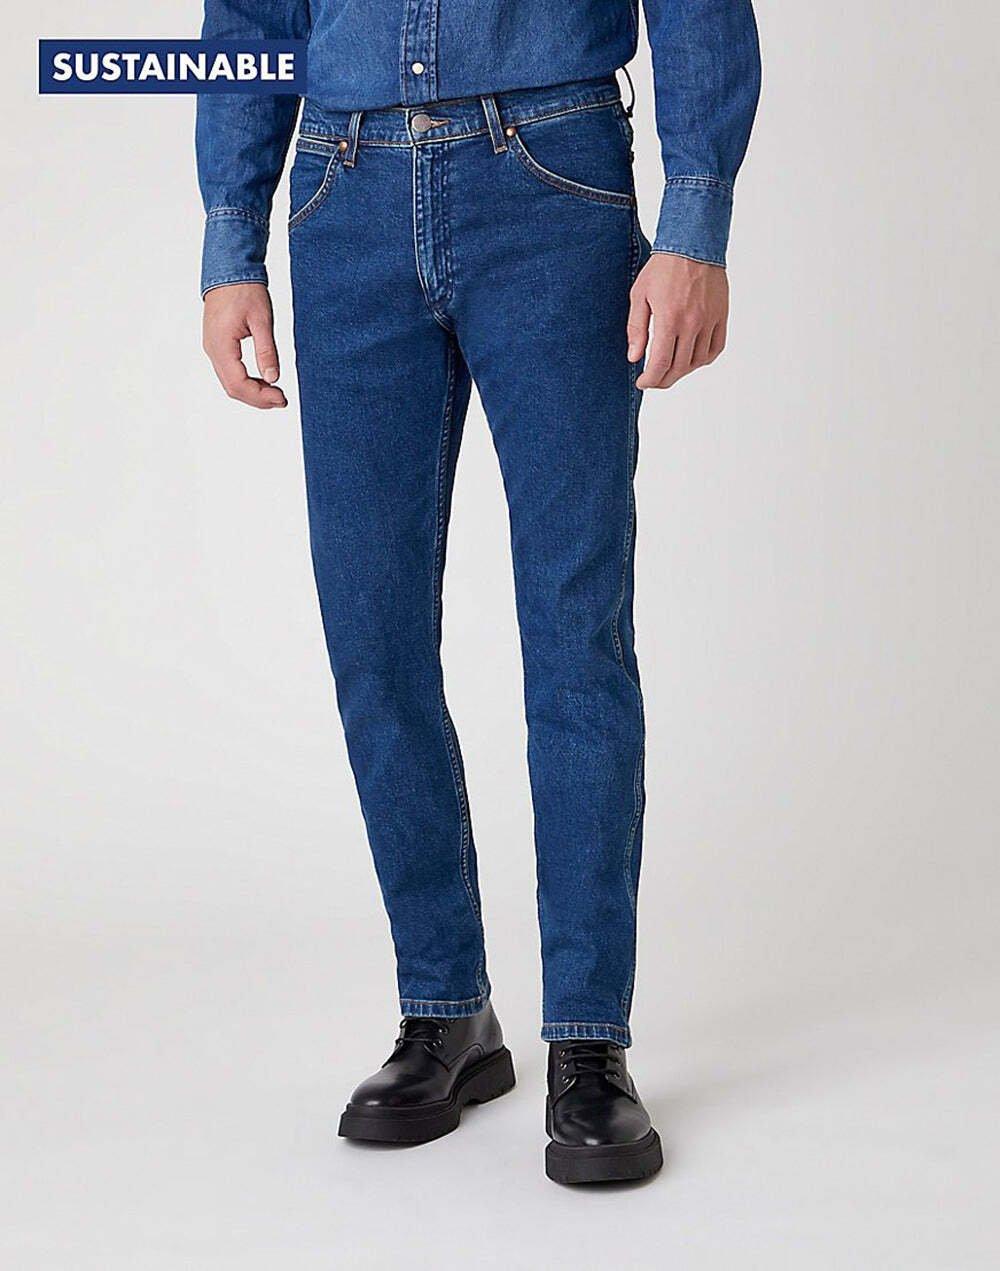 Jeans Slim Fit 11mwz Herren Blau Denim L34/W31 von Wrangler